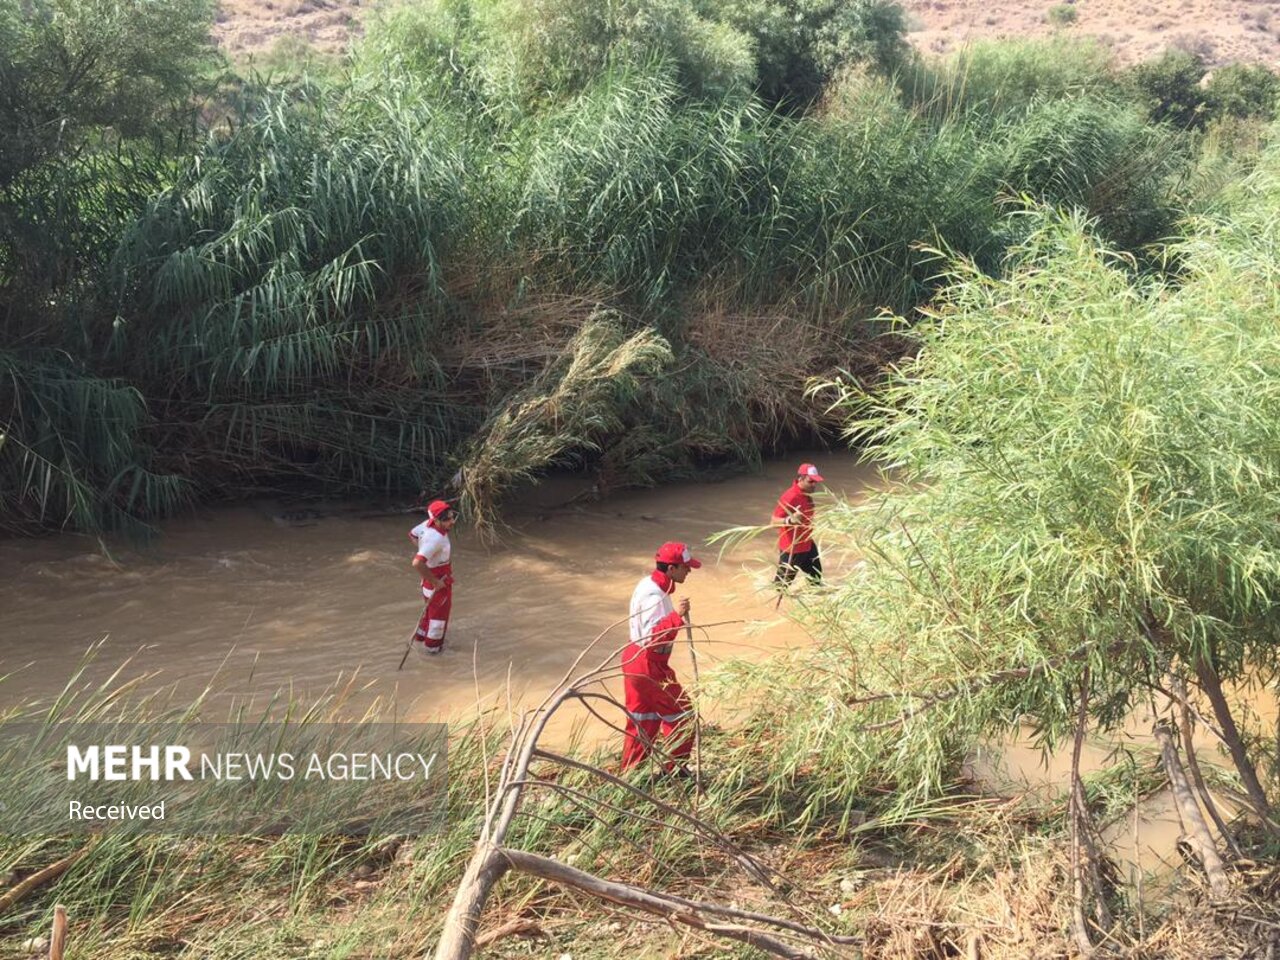 ۶۰میلیمتر باران در کالپوش بارید/ تداوم تلاش برای یافتن زن گمشده